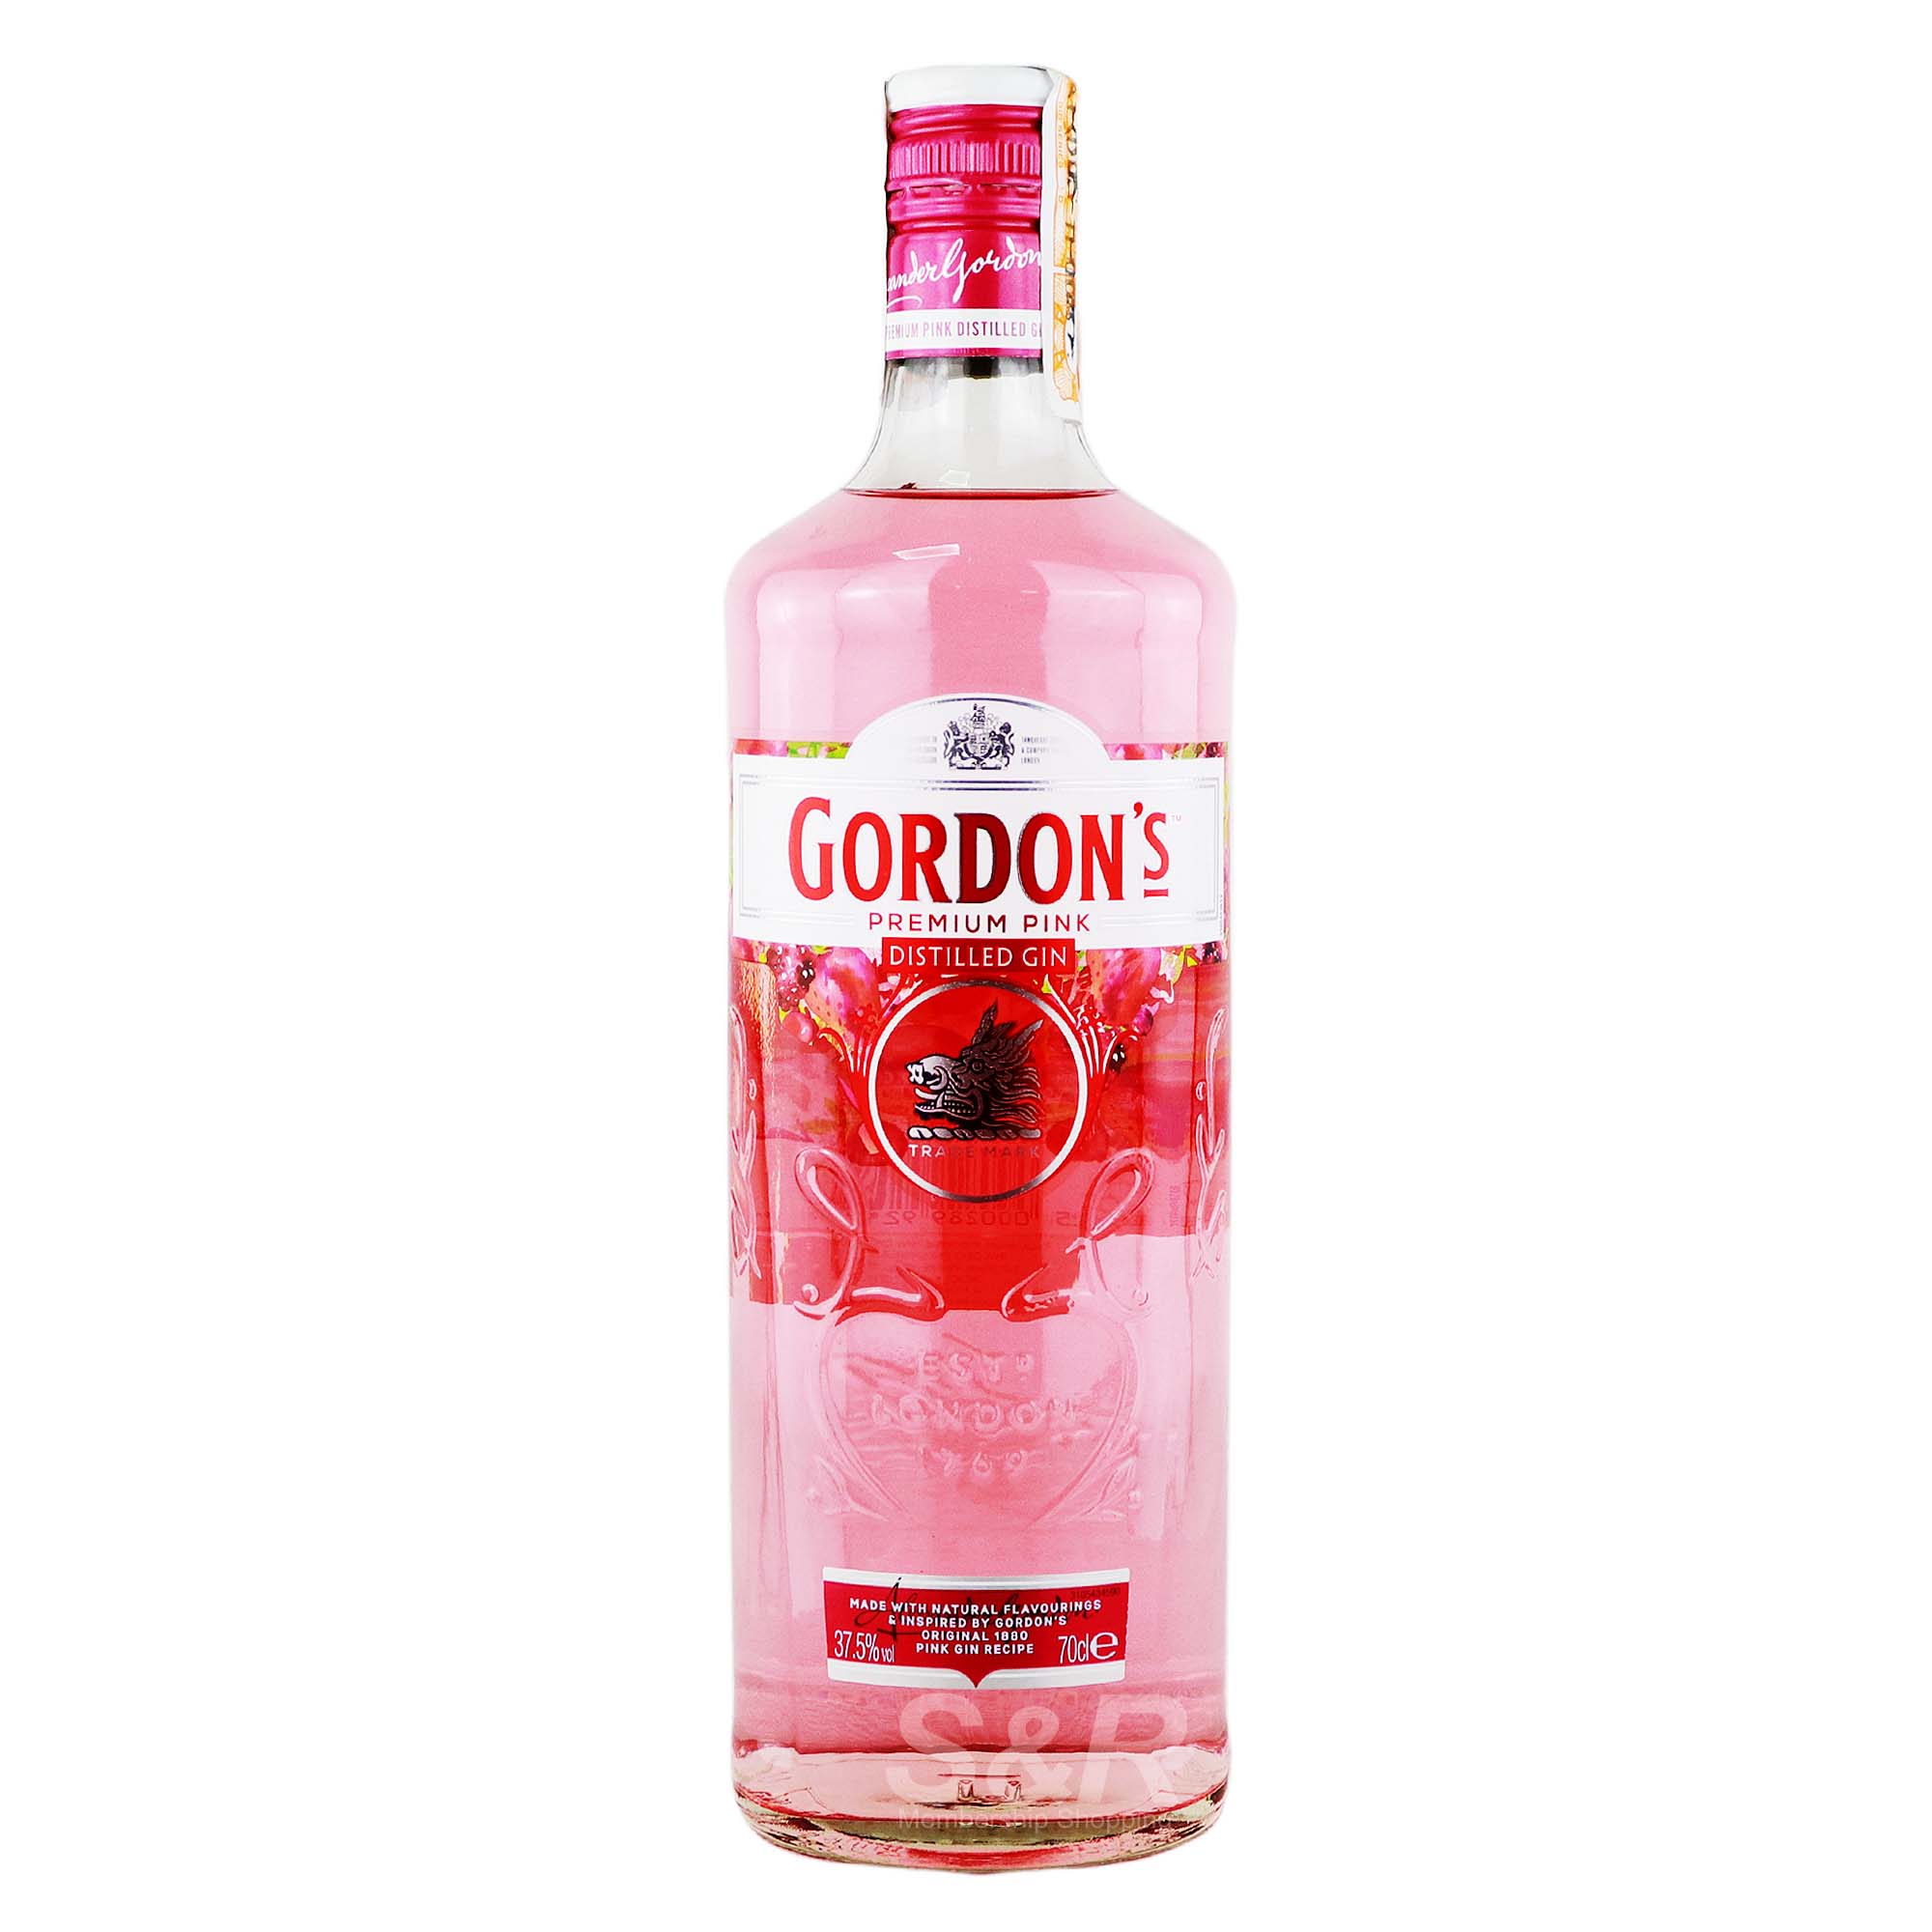 Gordon’s Premium Pink Distilled Gin 700mL